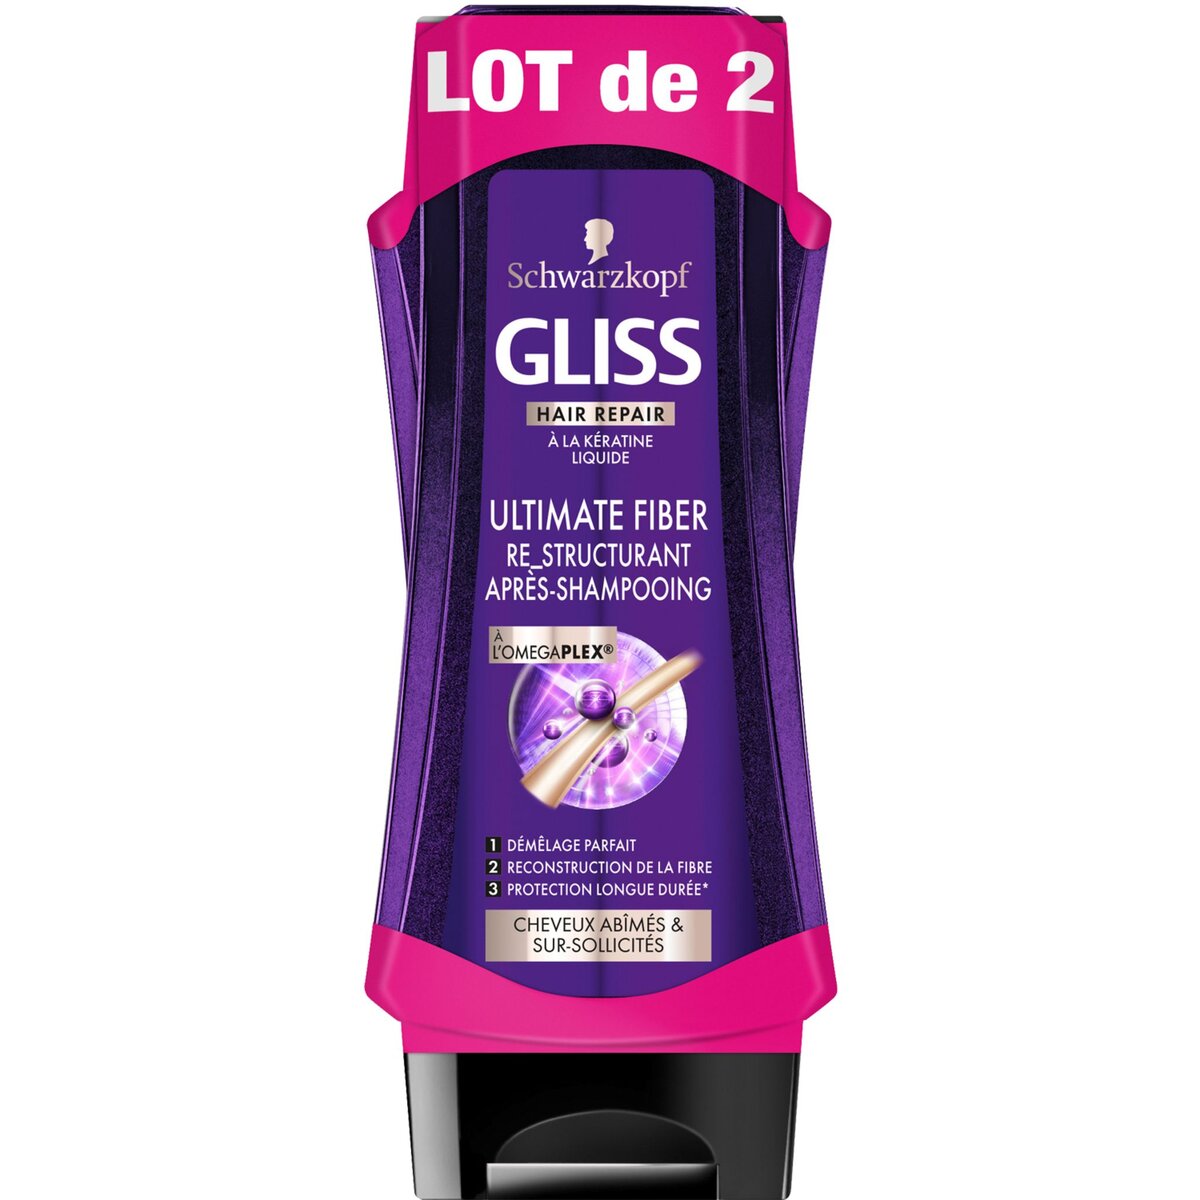 GLISS Après-shampooing re-structurant à l'omegaplex cheveux abîmés 2x200ml